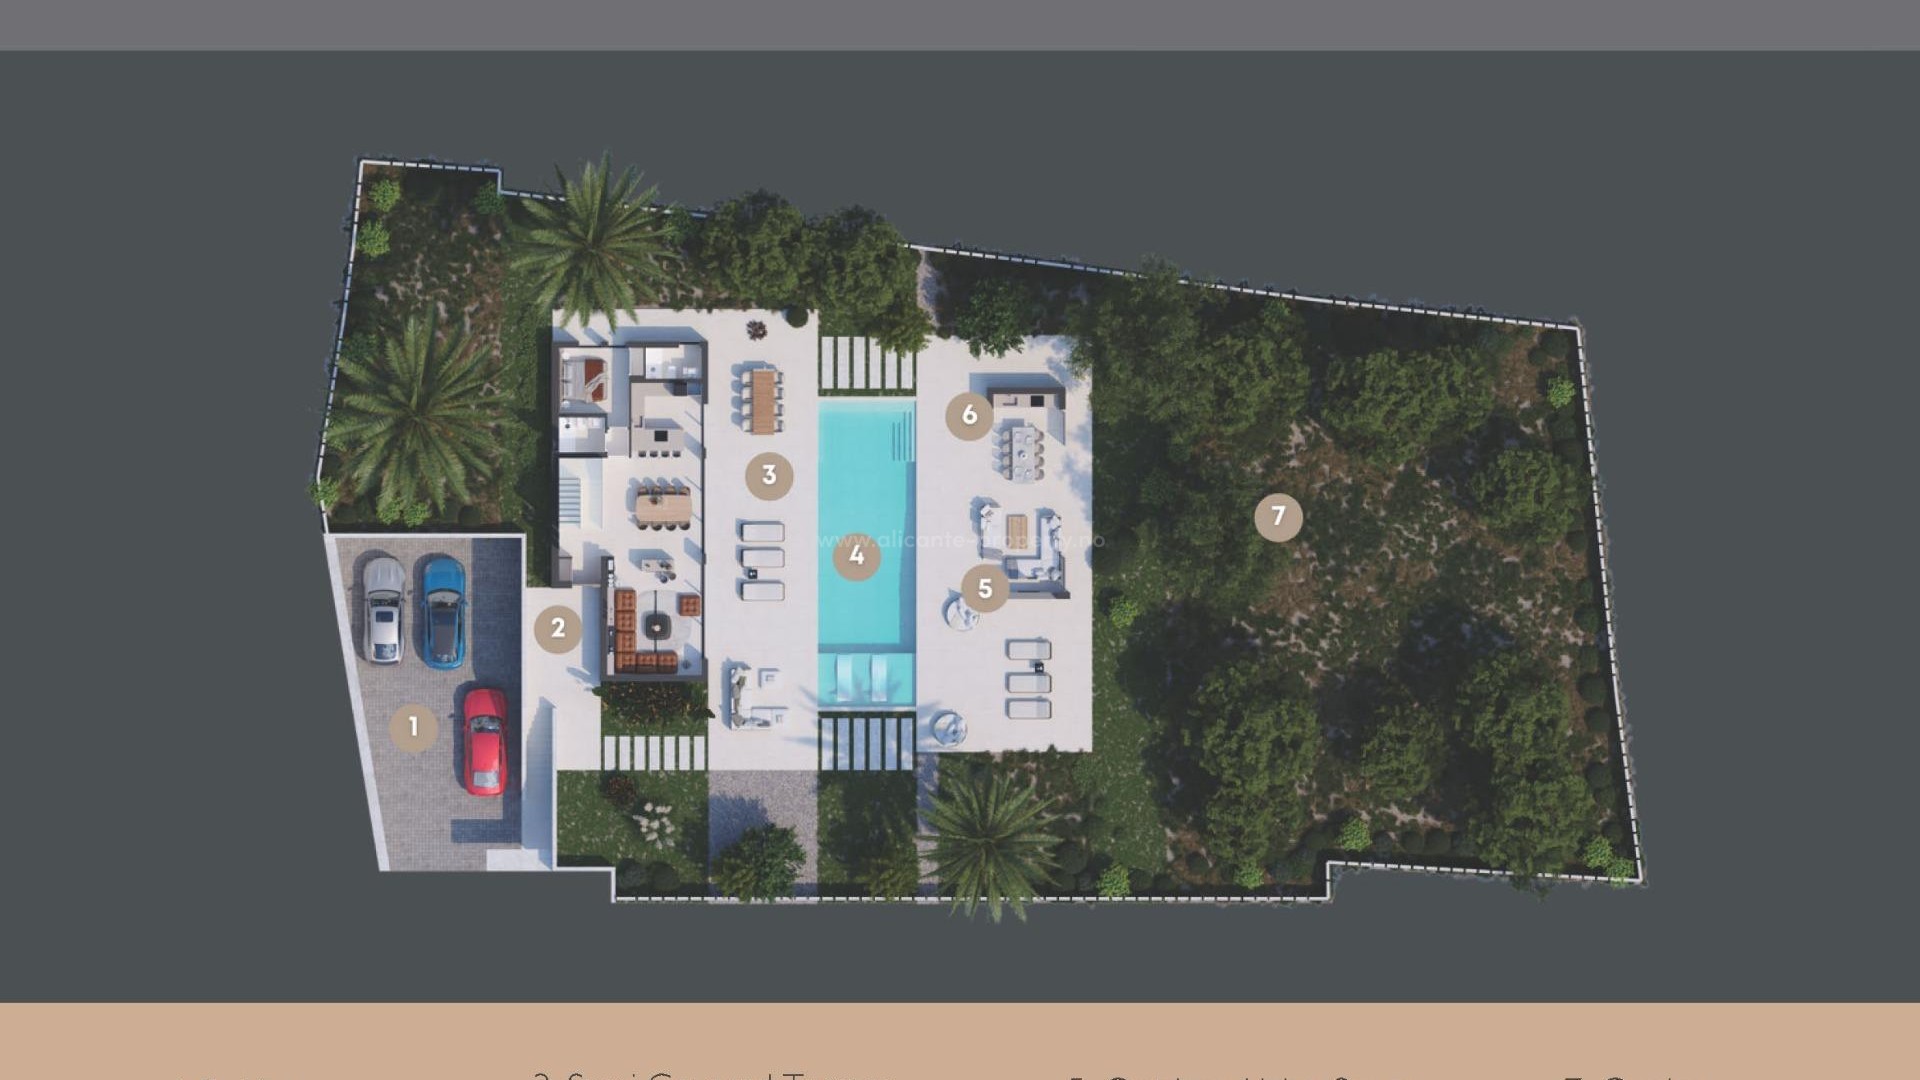 Luksus-villa i Javea/Xabia, 4 soverom, 5 bad, terrasse, åpen kjøkkenløsning, romslig stue. Hage med basseng.  Parkeringsplass for 3 biler